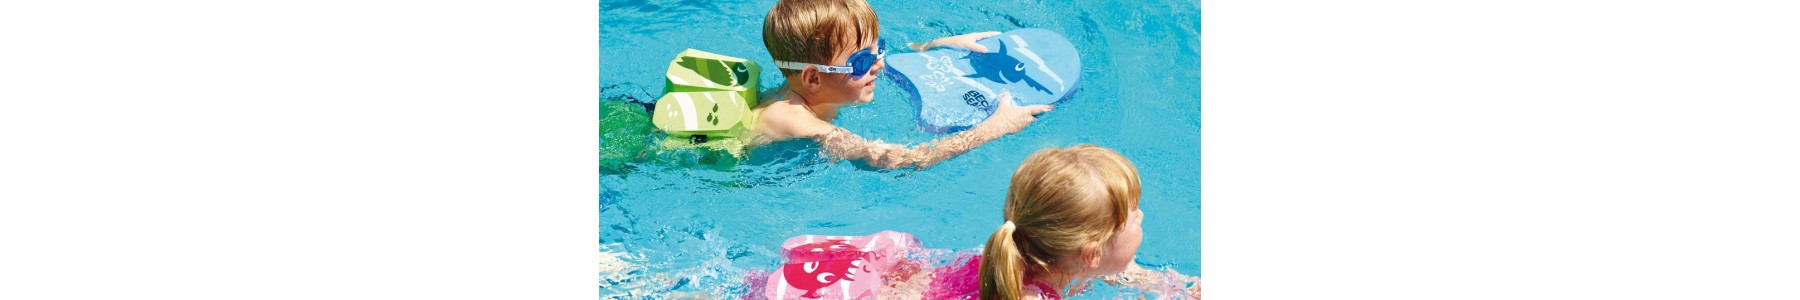 Schwimmen für behinderte Kinder Nützliches für den Spiel- und Therapie